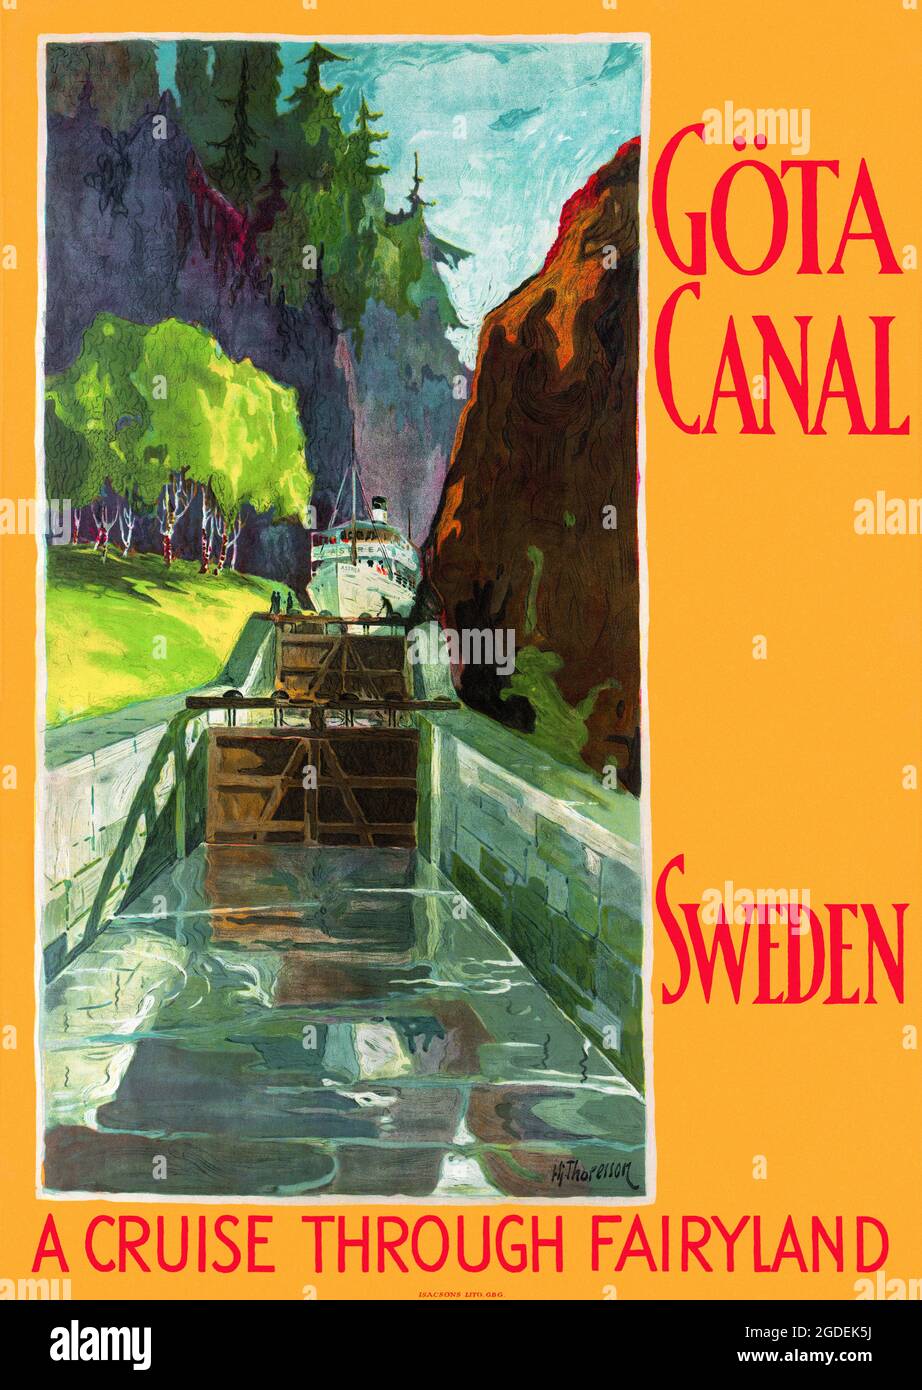 Canale di Göta, Svezia. Una crociera attraverso il Fairyland con Hjalmar Thoresson (1893-1943). Poster vintage restaurato pubblicato nel 1920 in Svezia. Foto Stock